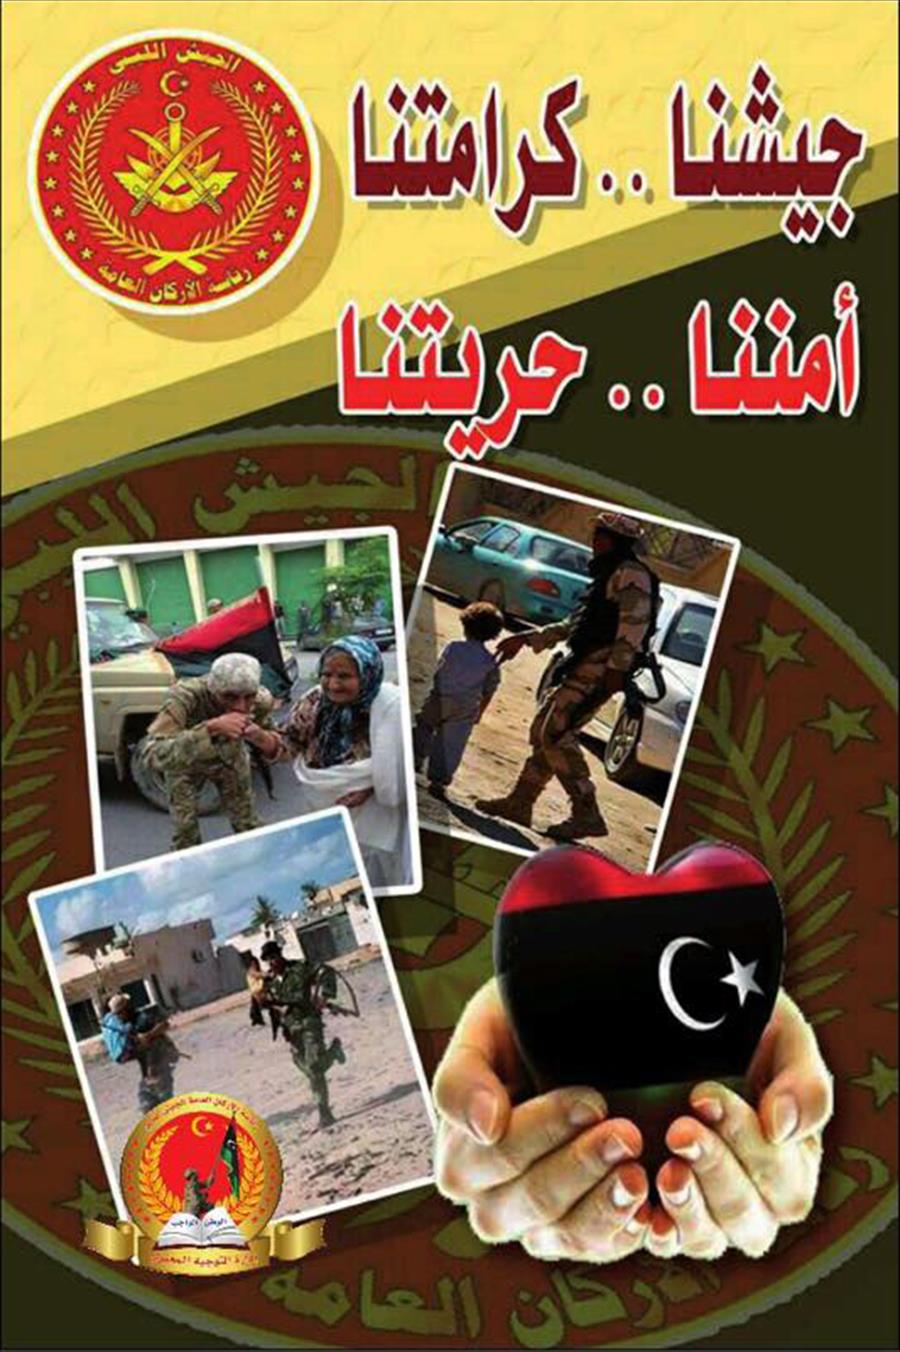 الجيش الليبي يوزّع مطويات وينشر لوحات إرشادية بشوارع بنغازي